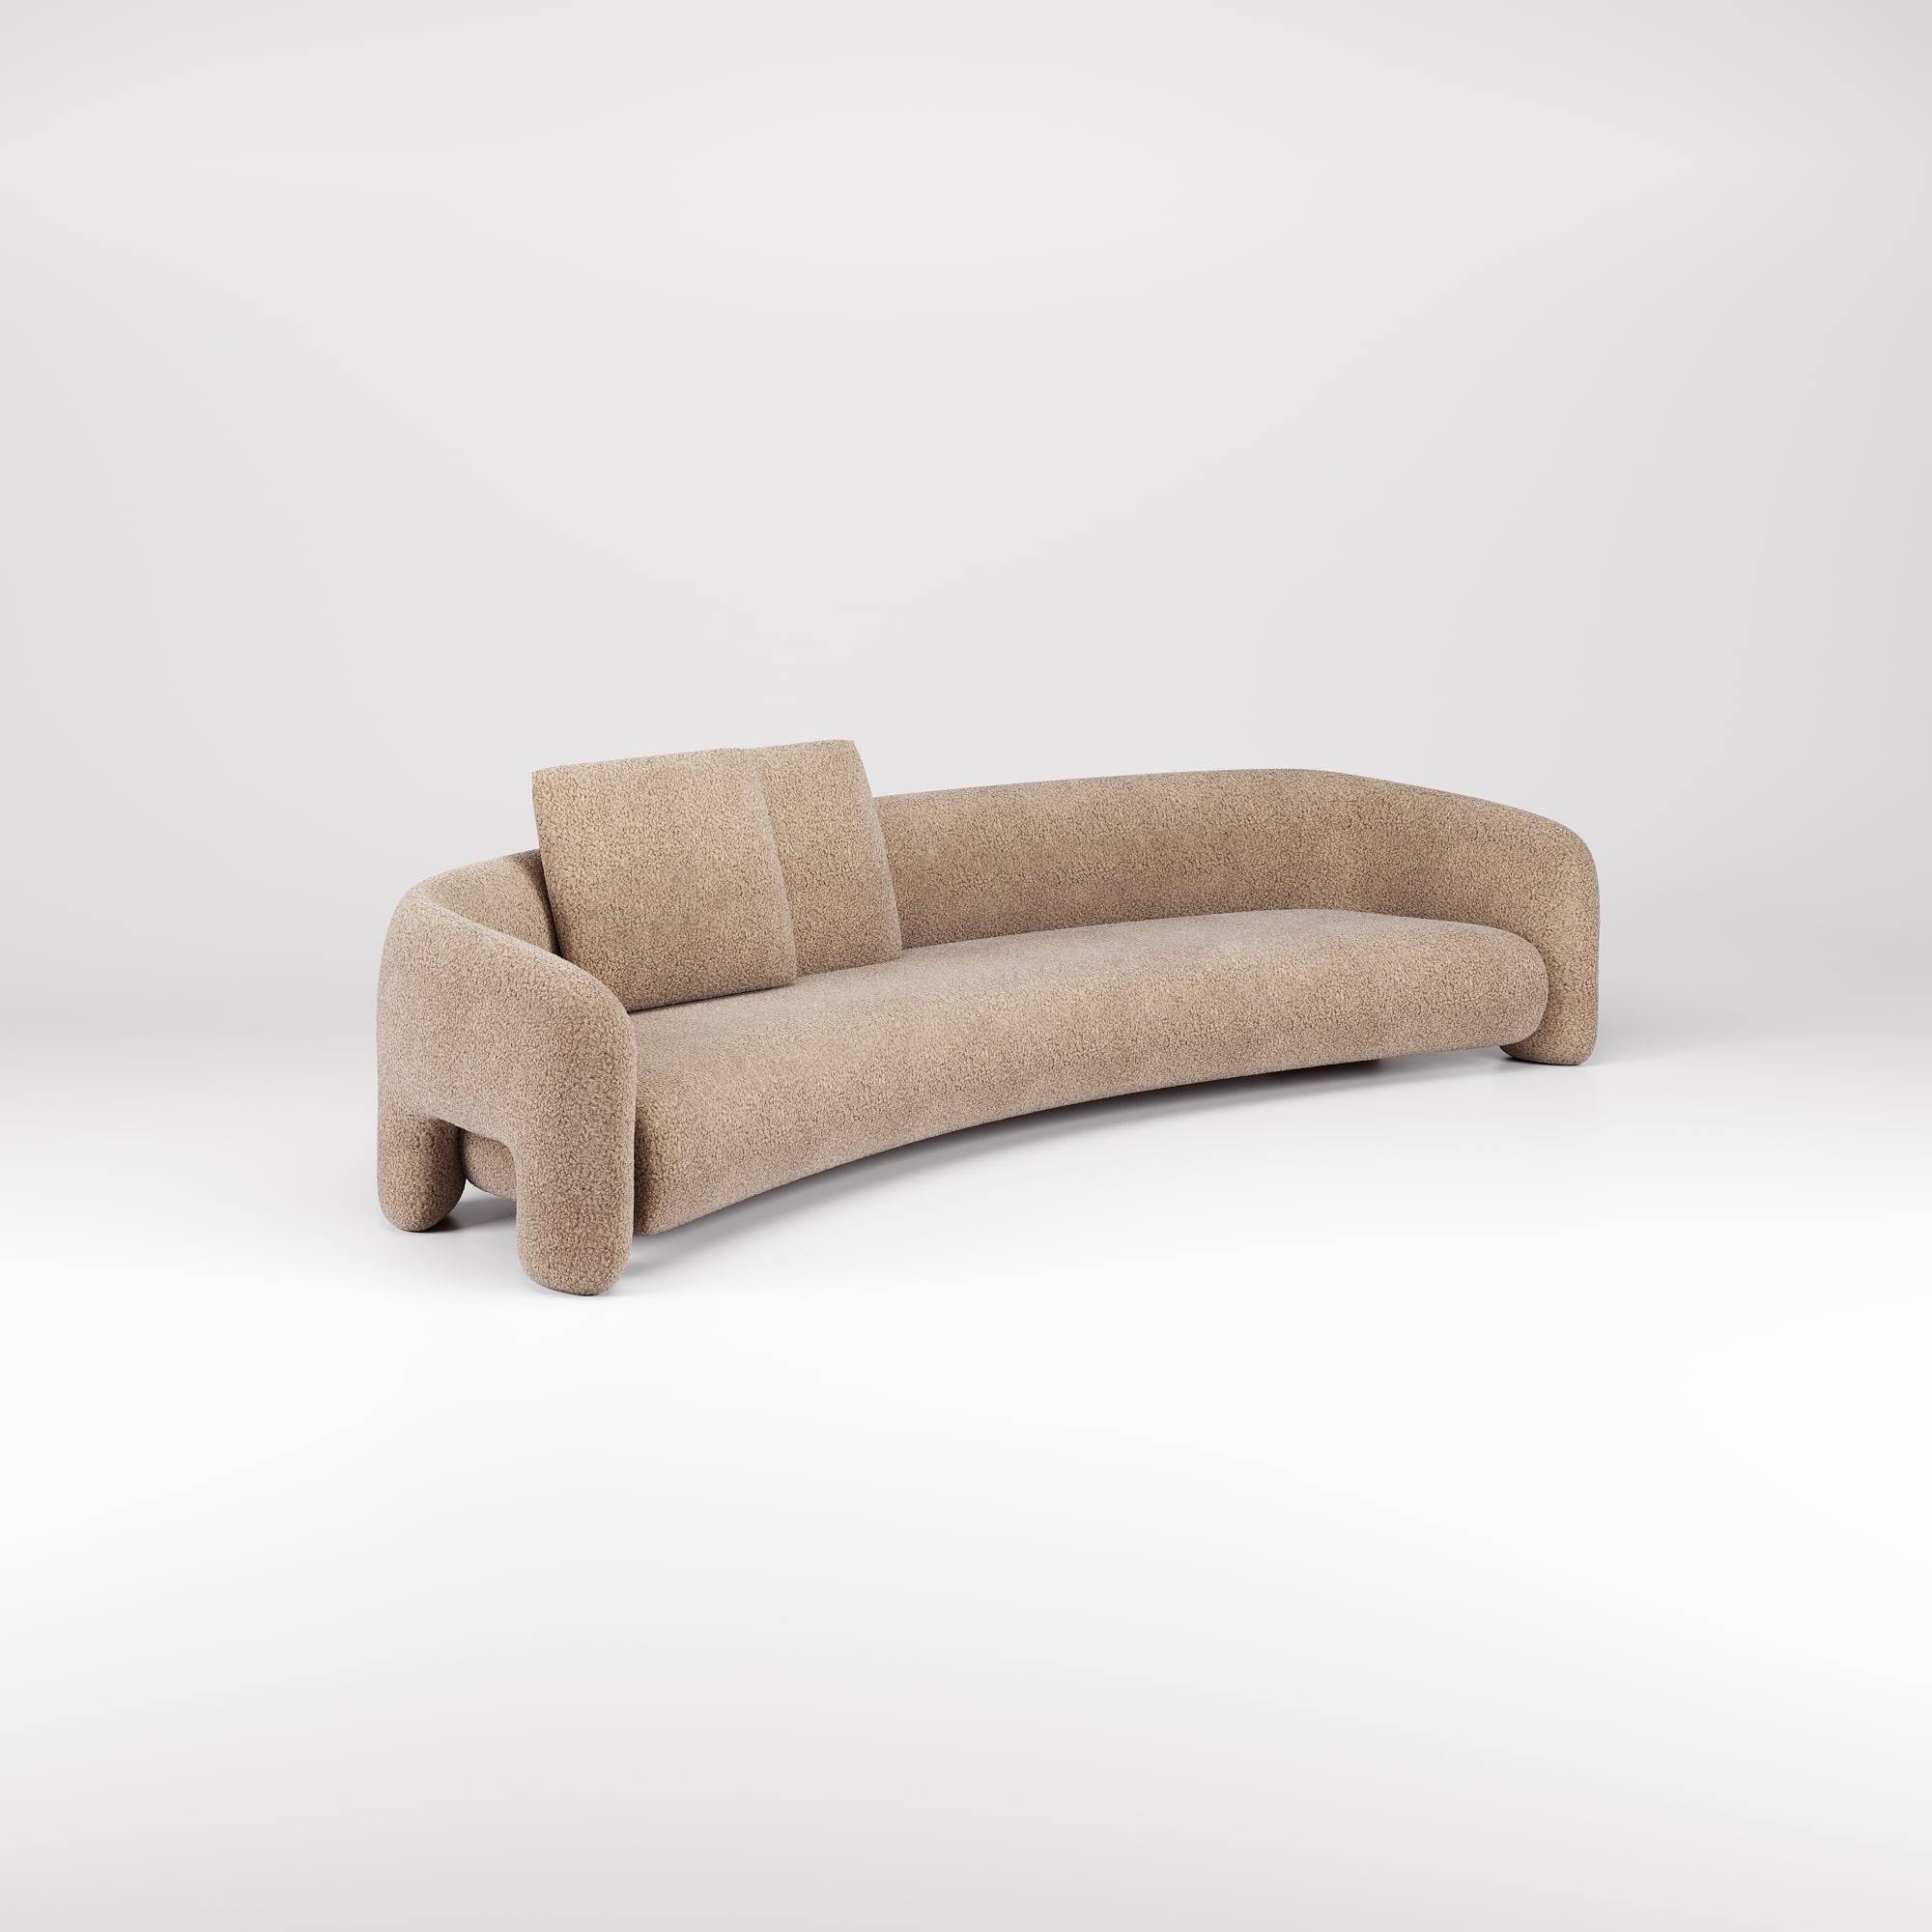 Avec son design contemporain, cette version du Bold Sofa Curved introduit de nouvelles dimensions de confort, offrant un espace élargi pour une relaxation ultime.

Les lignes fluides et les courbes organiques, combinées à l'ouverture des bras,